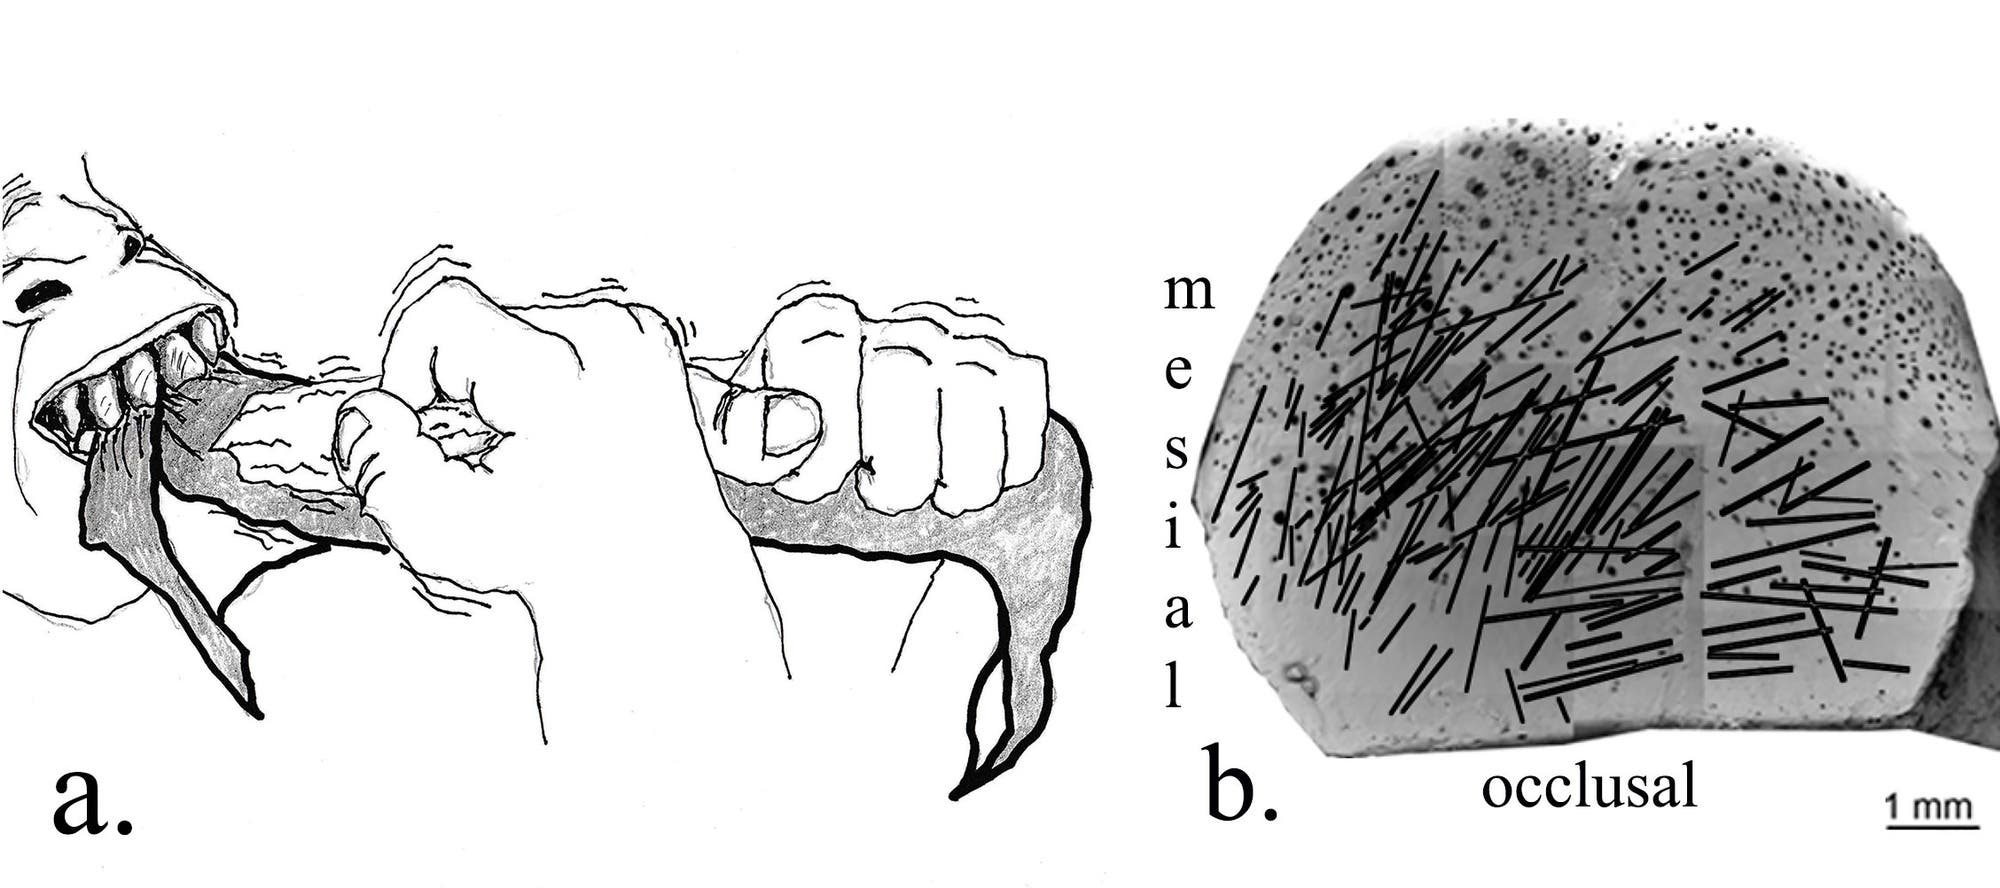 Die Schemazeichnung verdeutlicht, wie die Kratzer in die Zähne des Homo habilis gekommen sind.